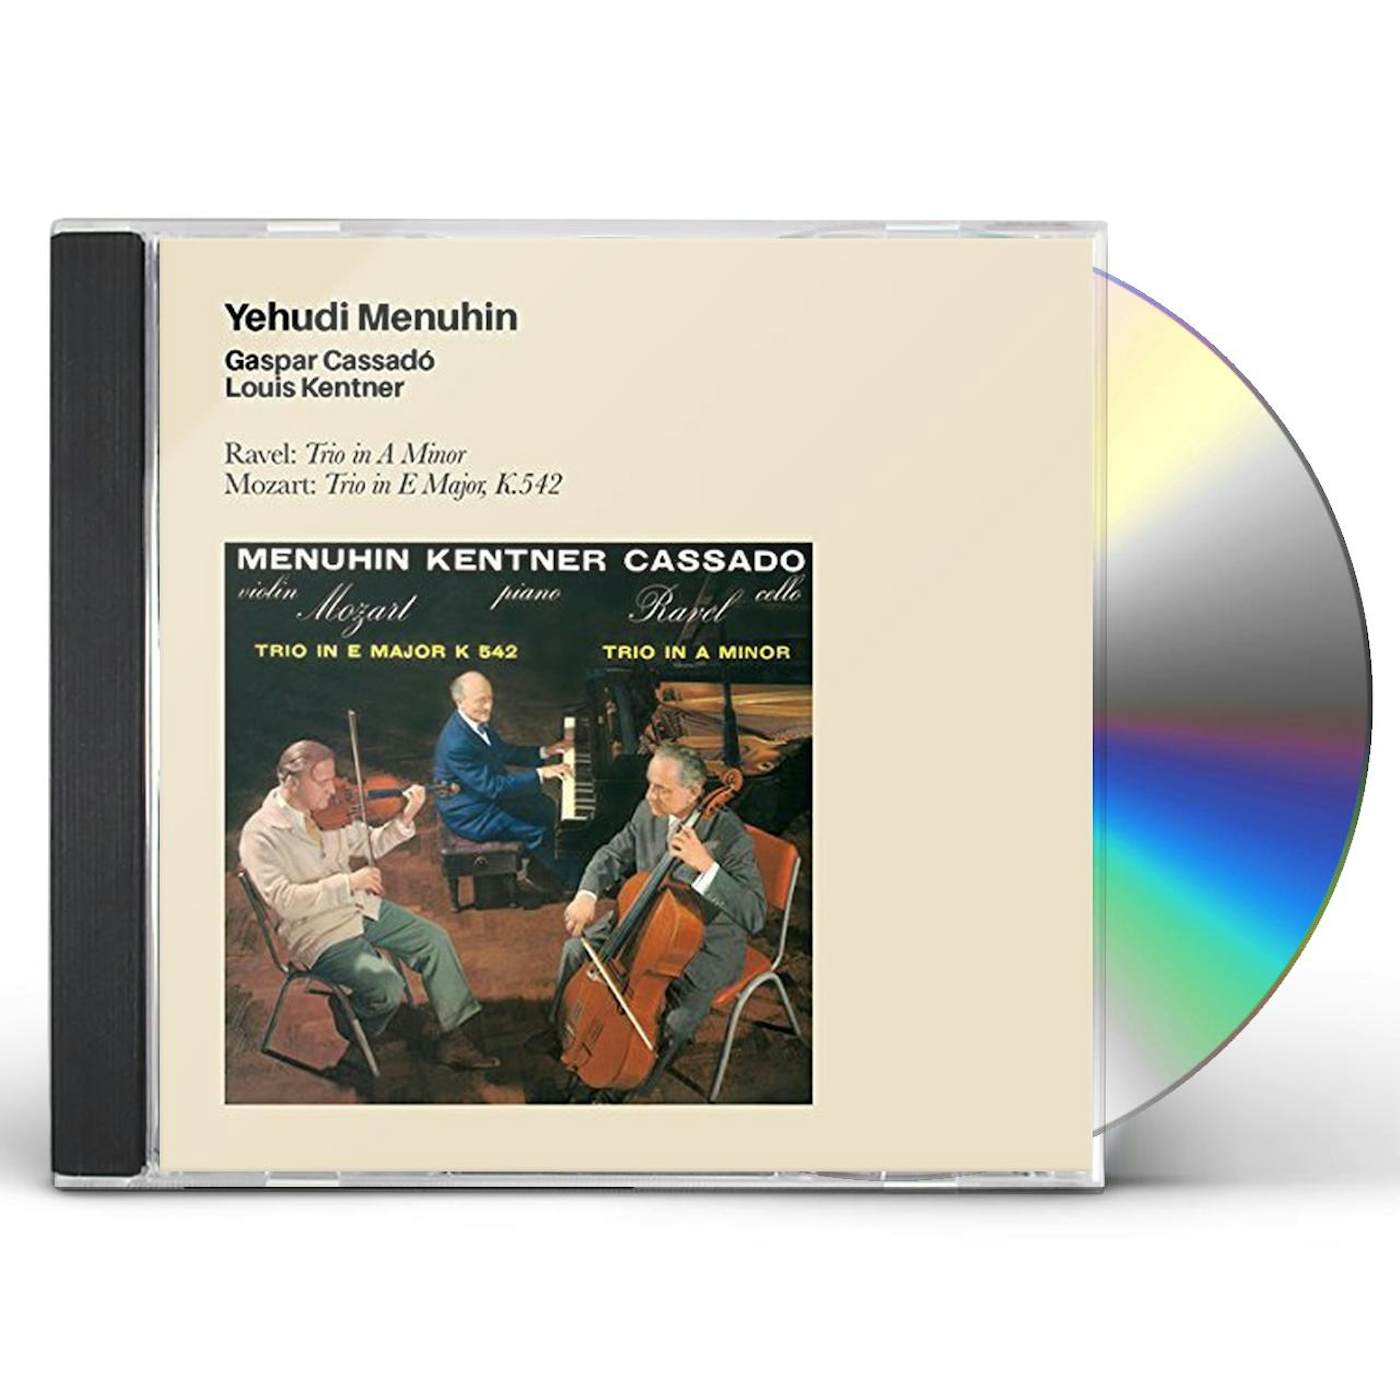 Yehudi Menuhin RAVEL: TRIO IN A MINOR CD